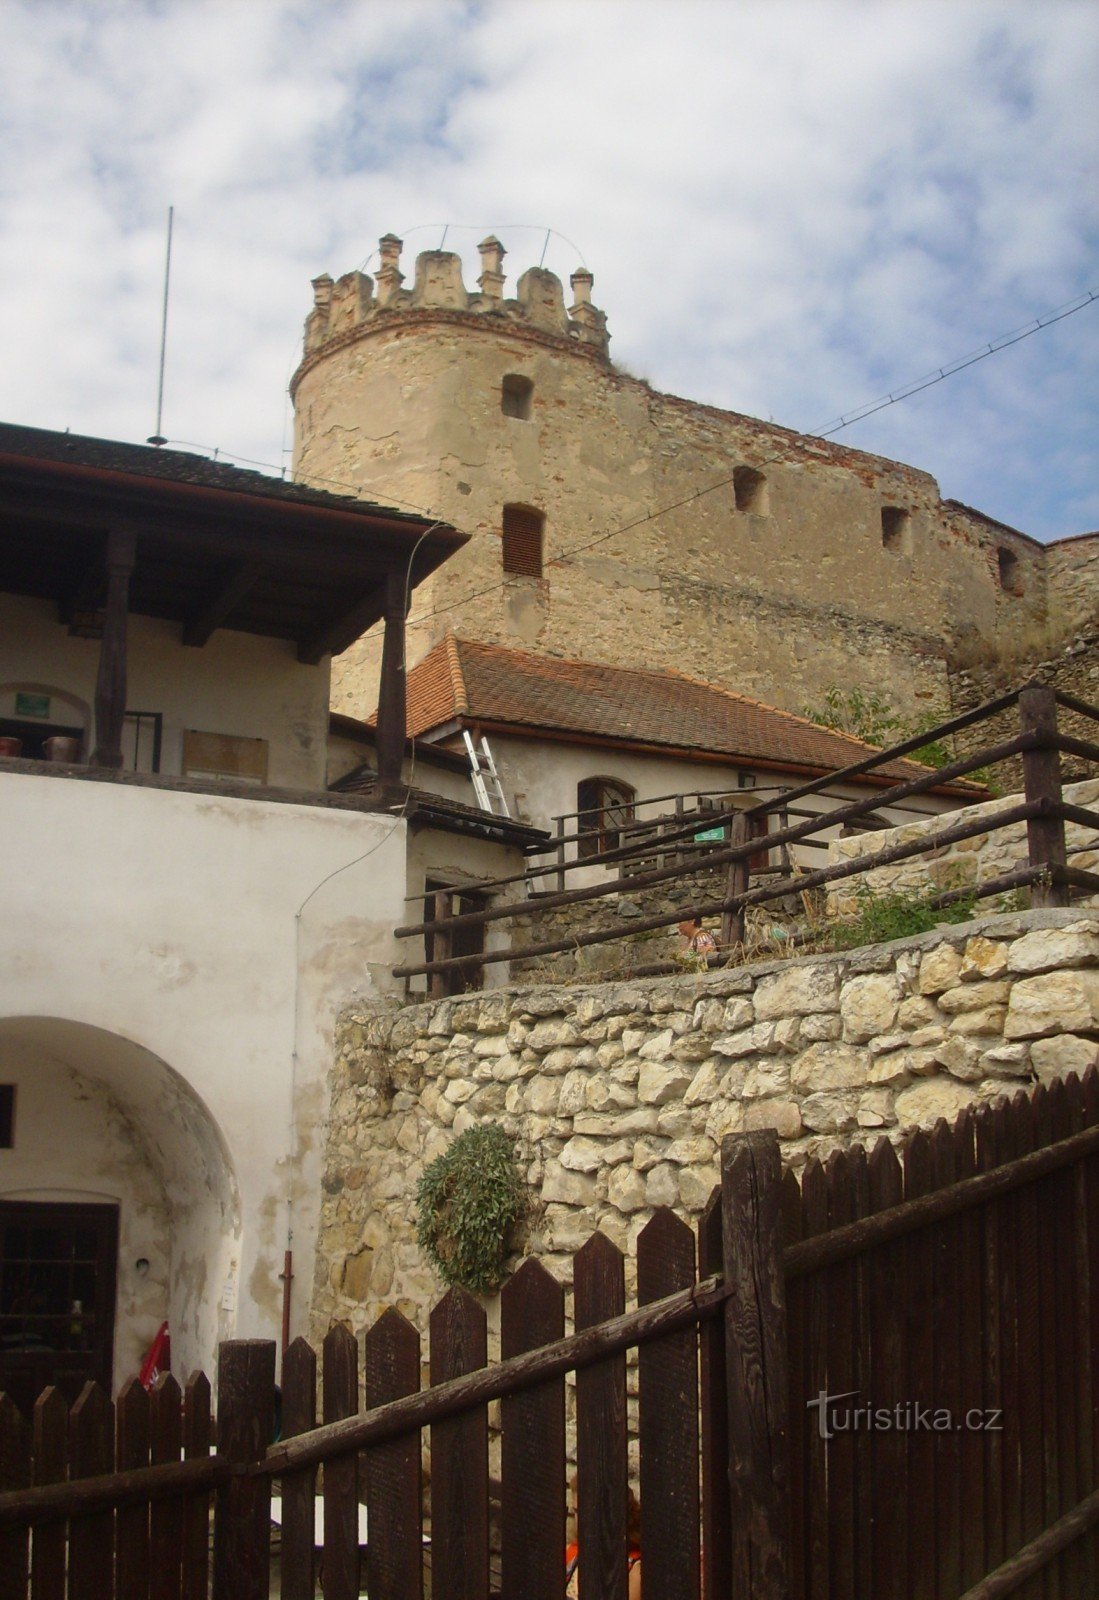 Dvorac Boskovice